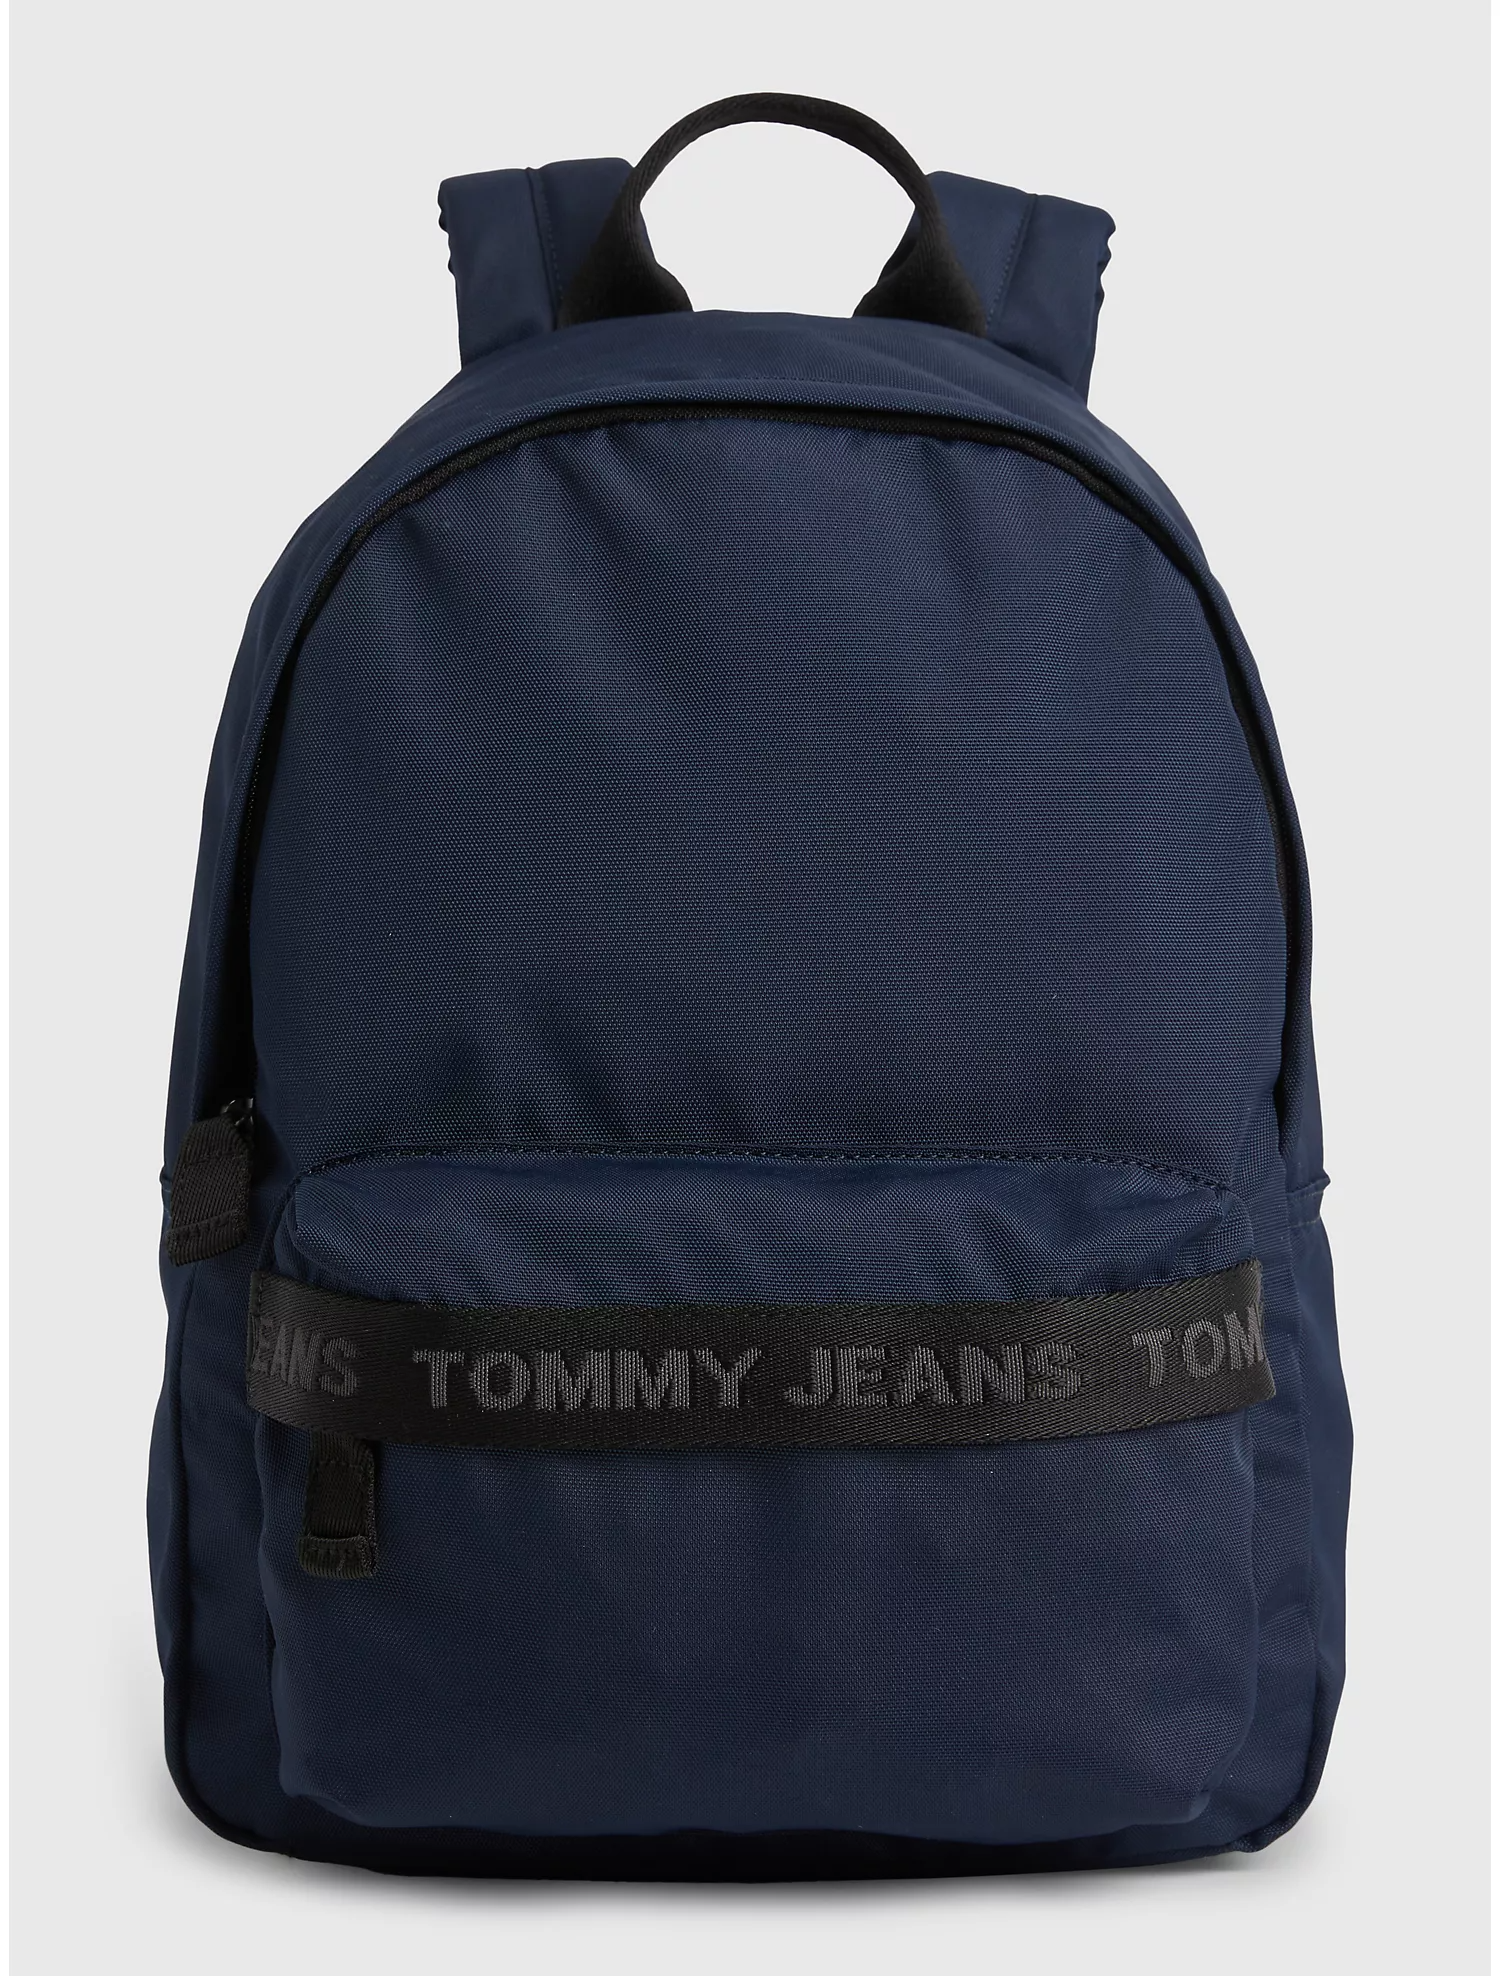 Рюкзак унисекс Tommy Hilfiger AW14952 синий, 39x25x15 см